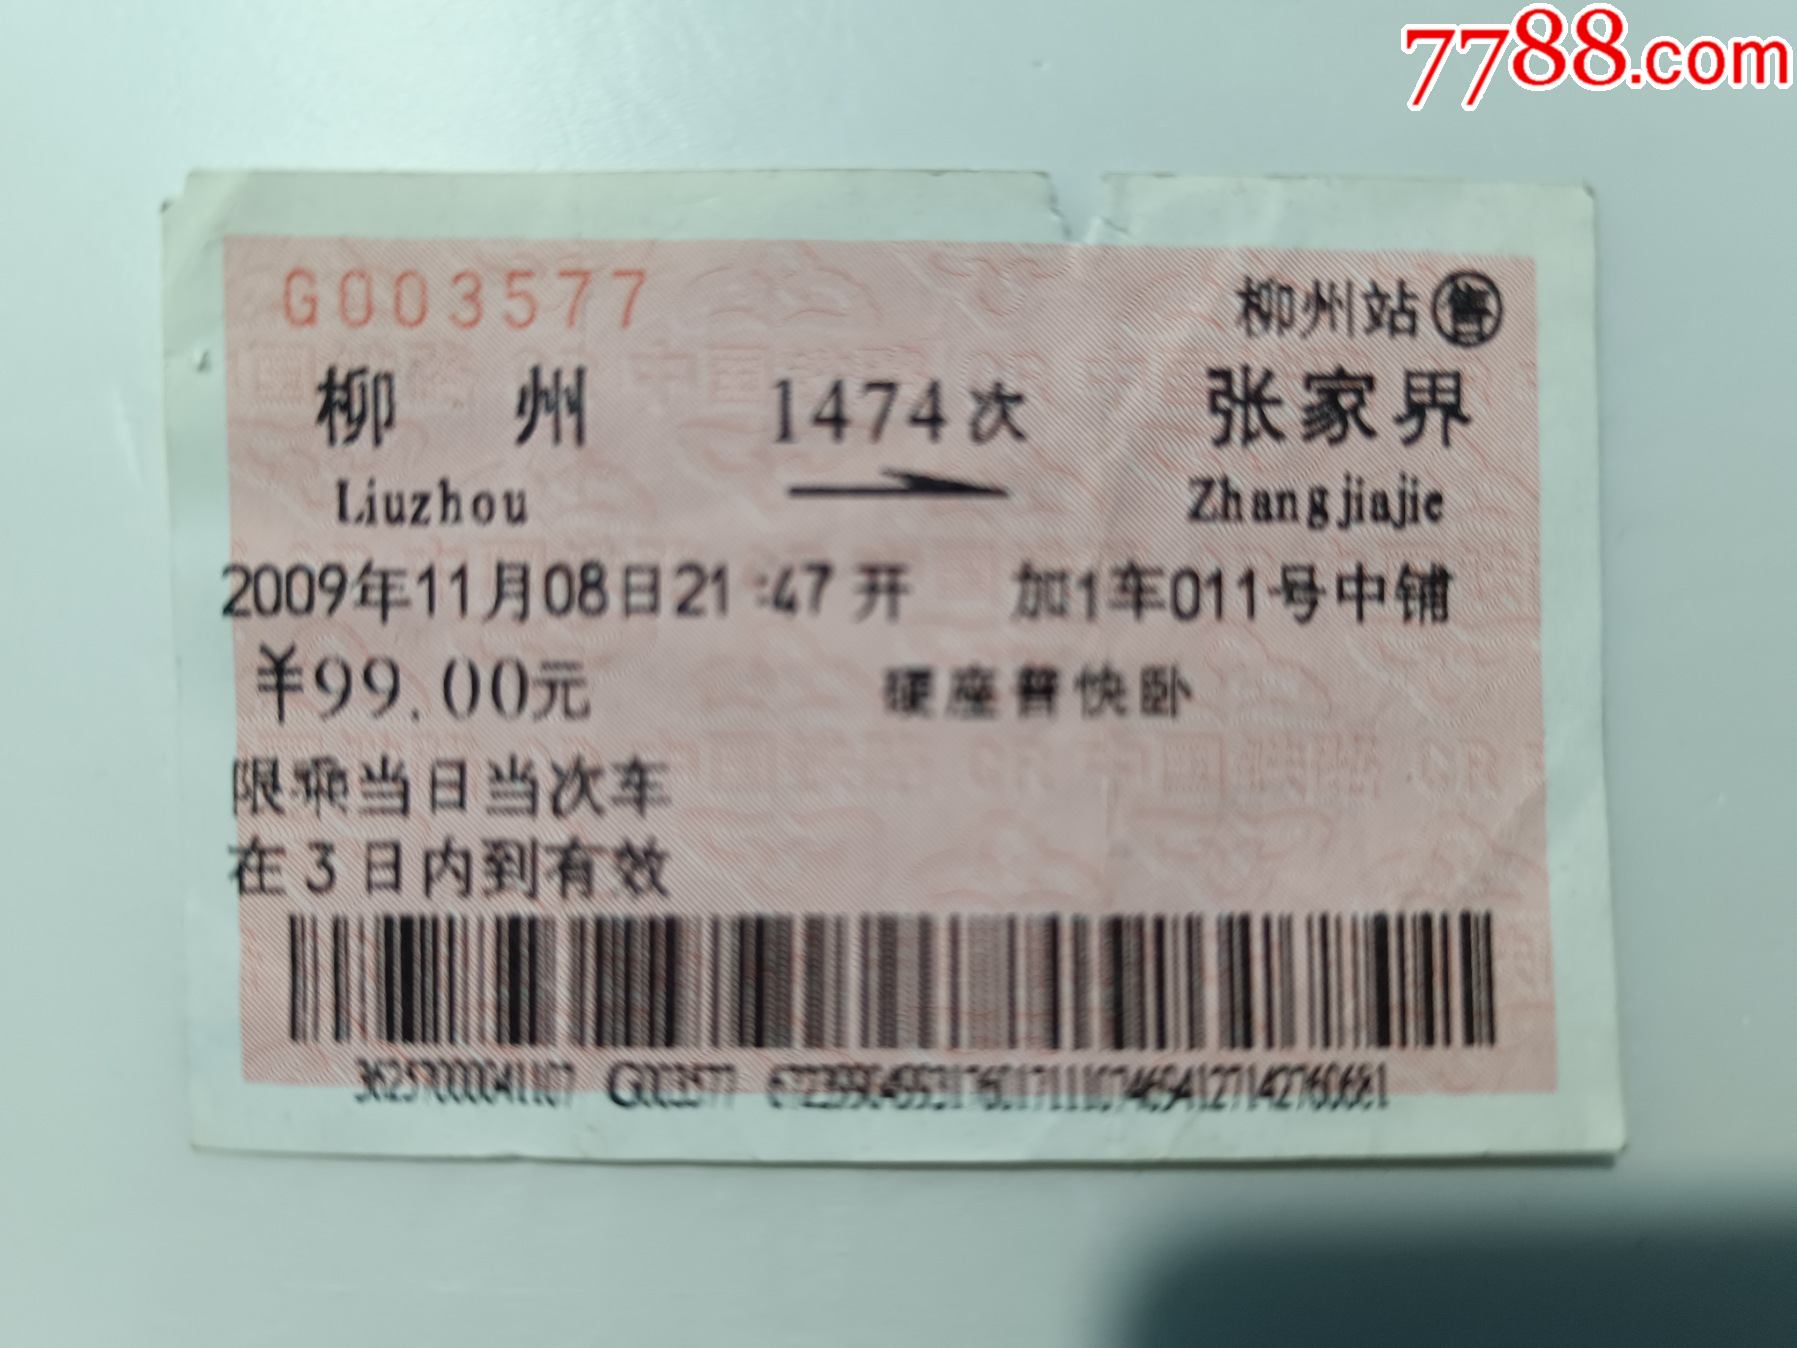 柳州局火车票到站了不同-价格:8元-se88410490-火车票-零售-7788收藏__收藏热线